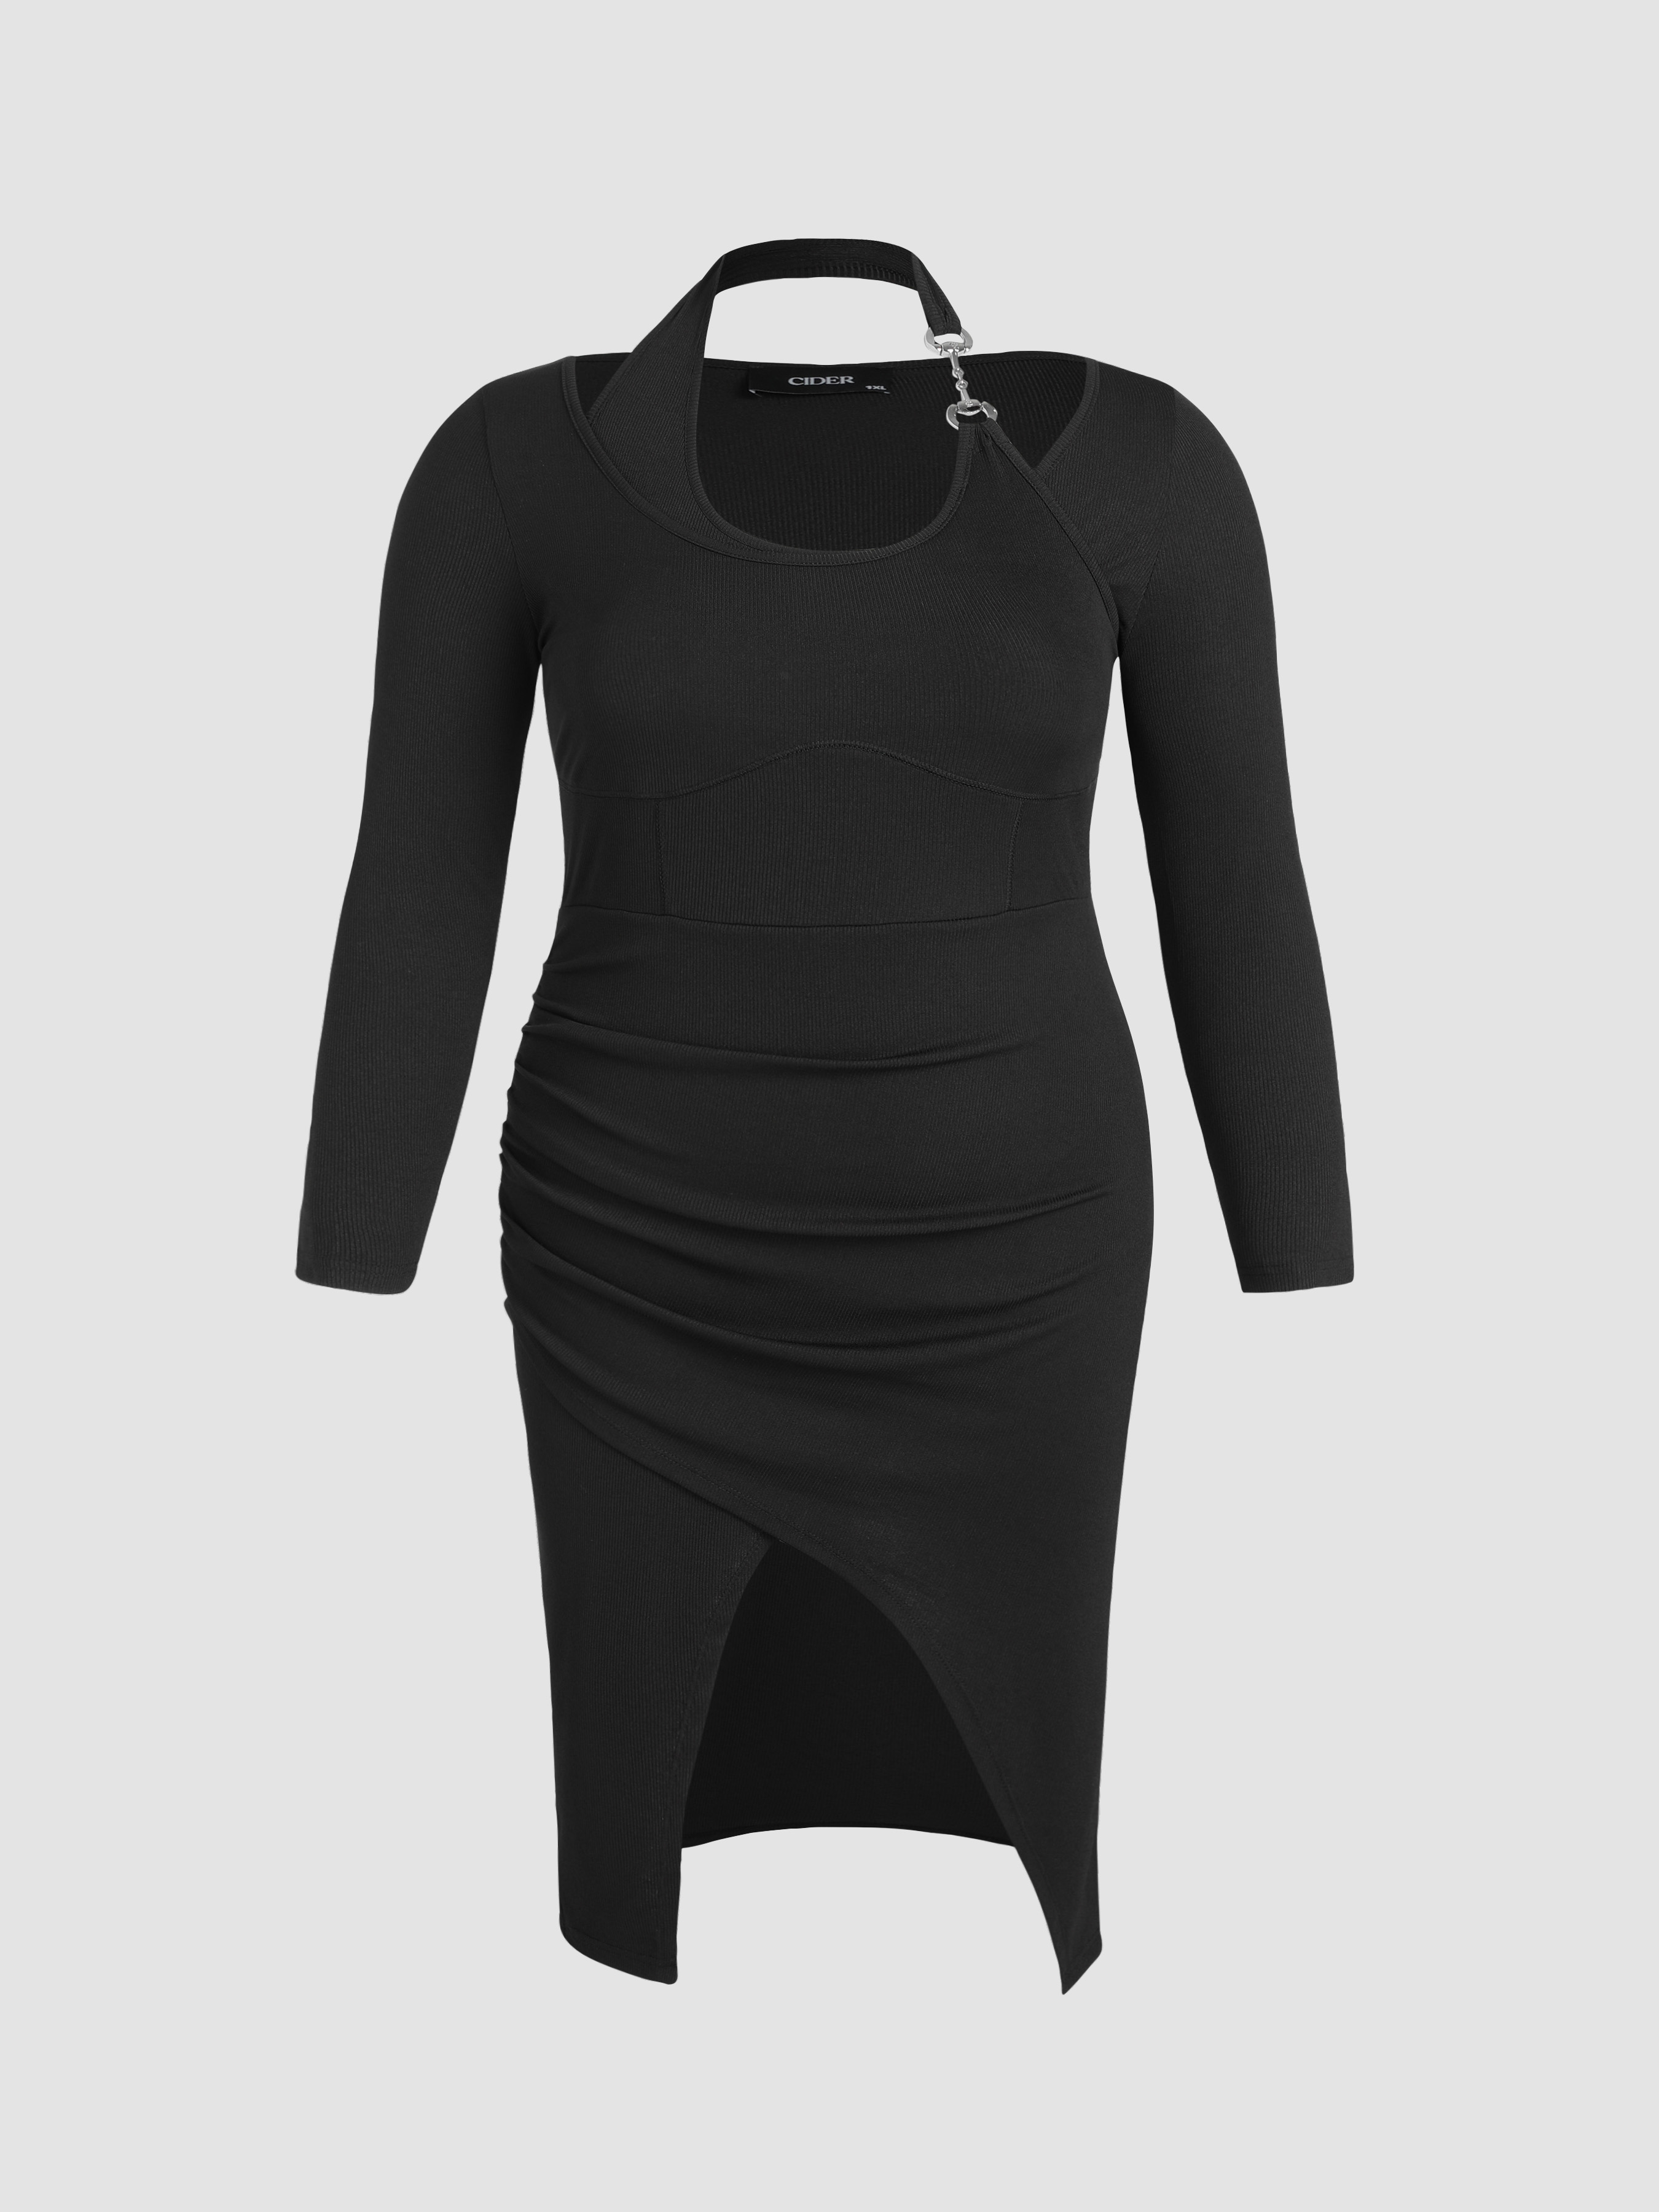 Off Shoulder Satin Corset Slit Gown by Ladivine 7492 – ABC Fashion